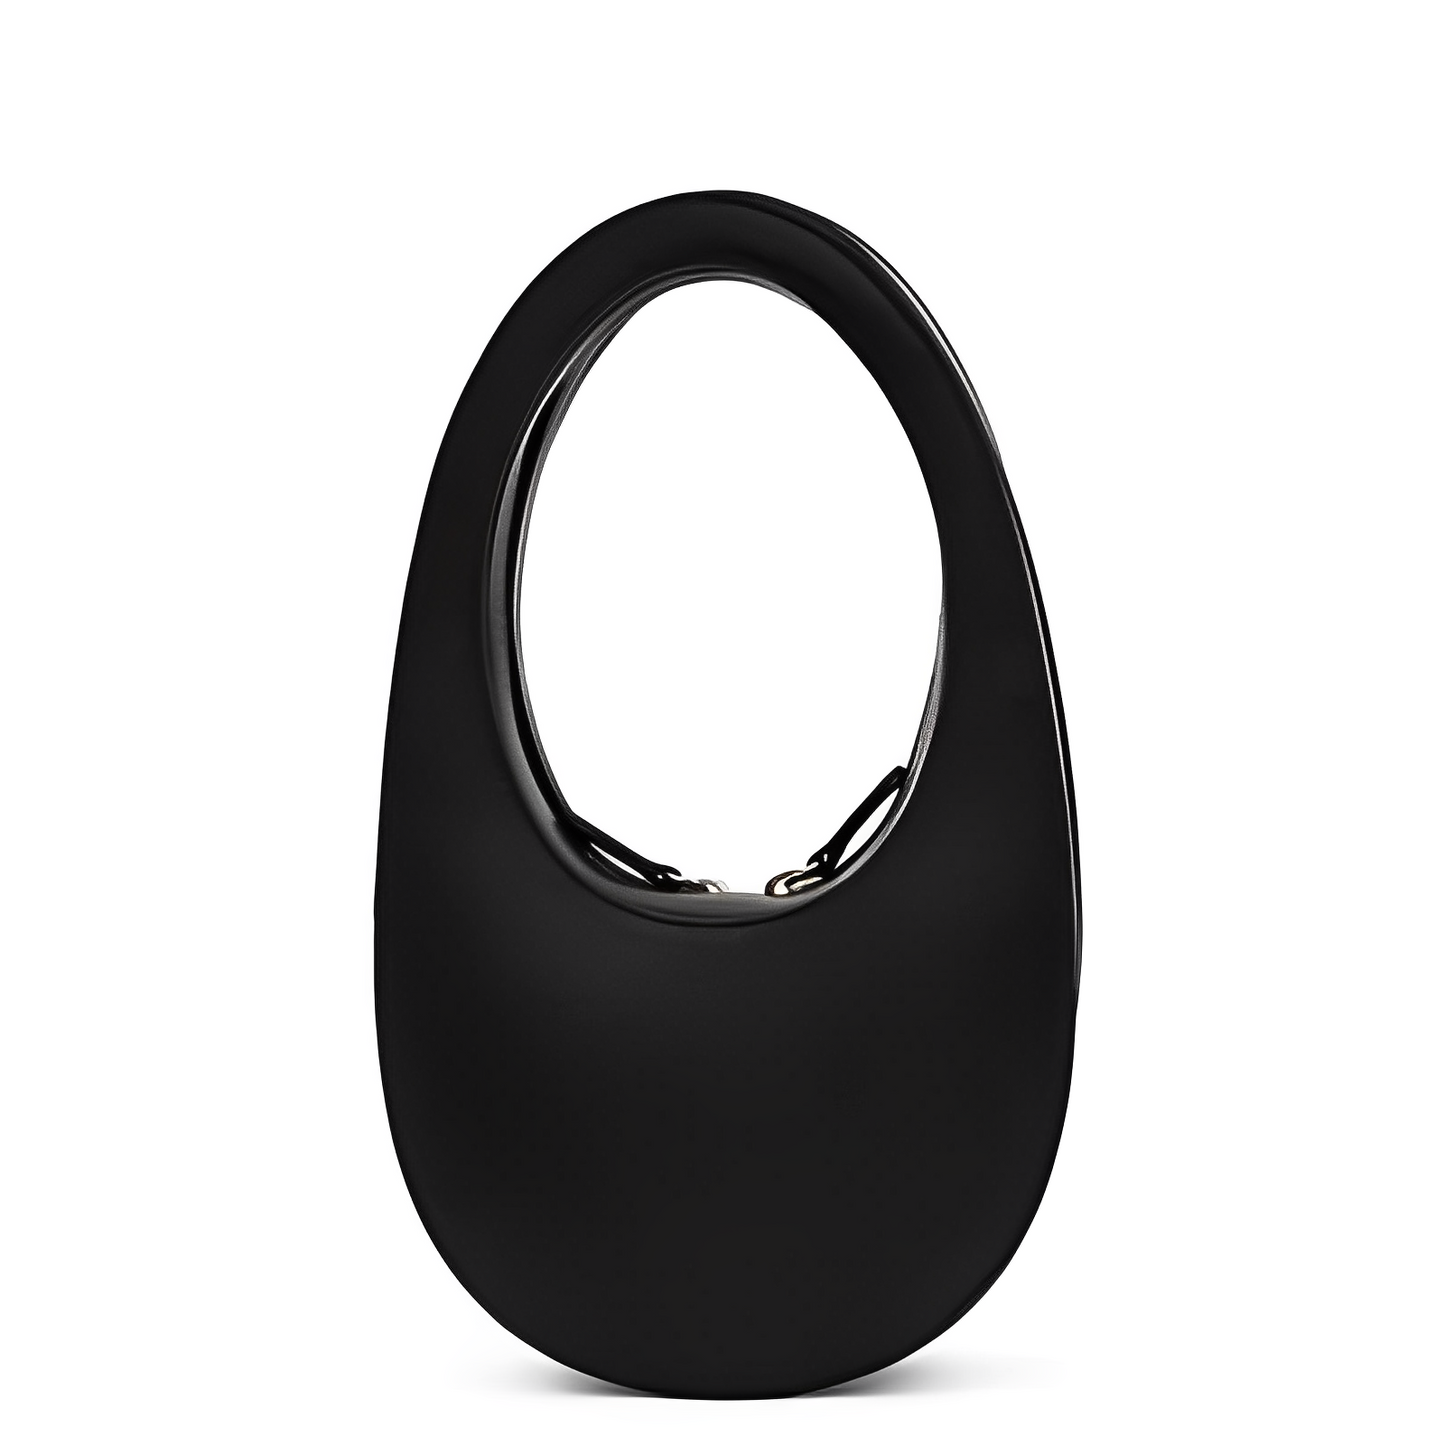 Black Shoulder Bag With Sleek Silver Accents